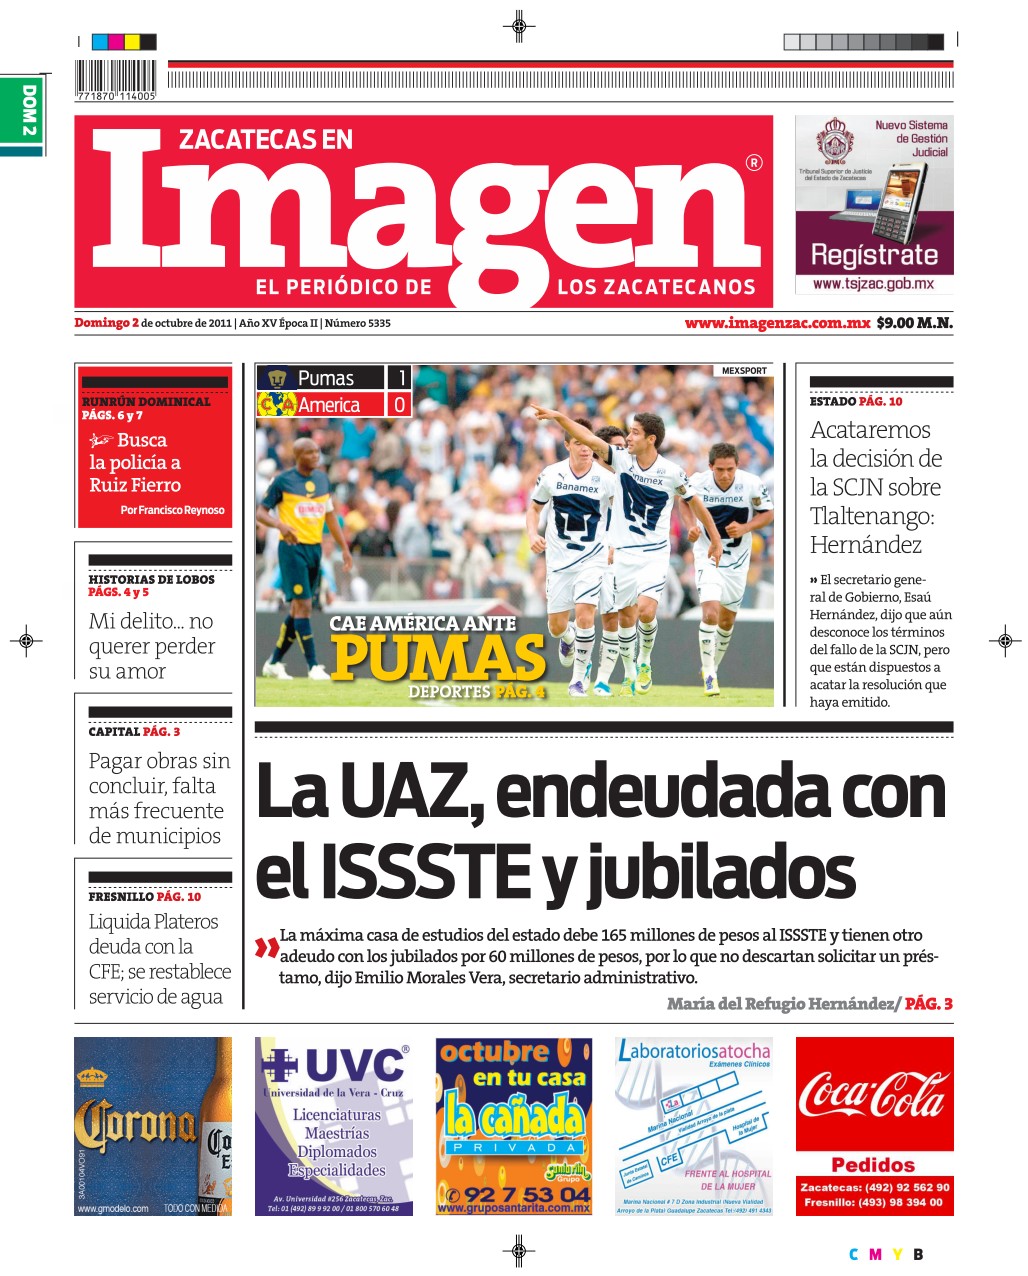 Imagen Zacatecas edición del 02 de Octubre 2011